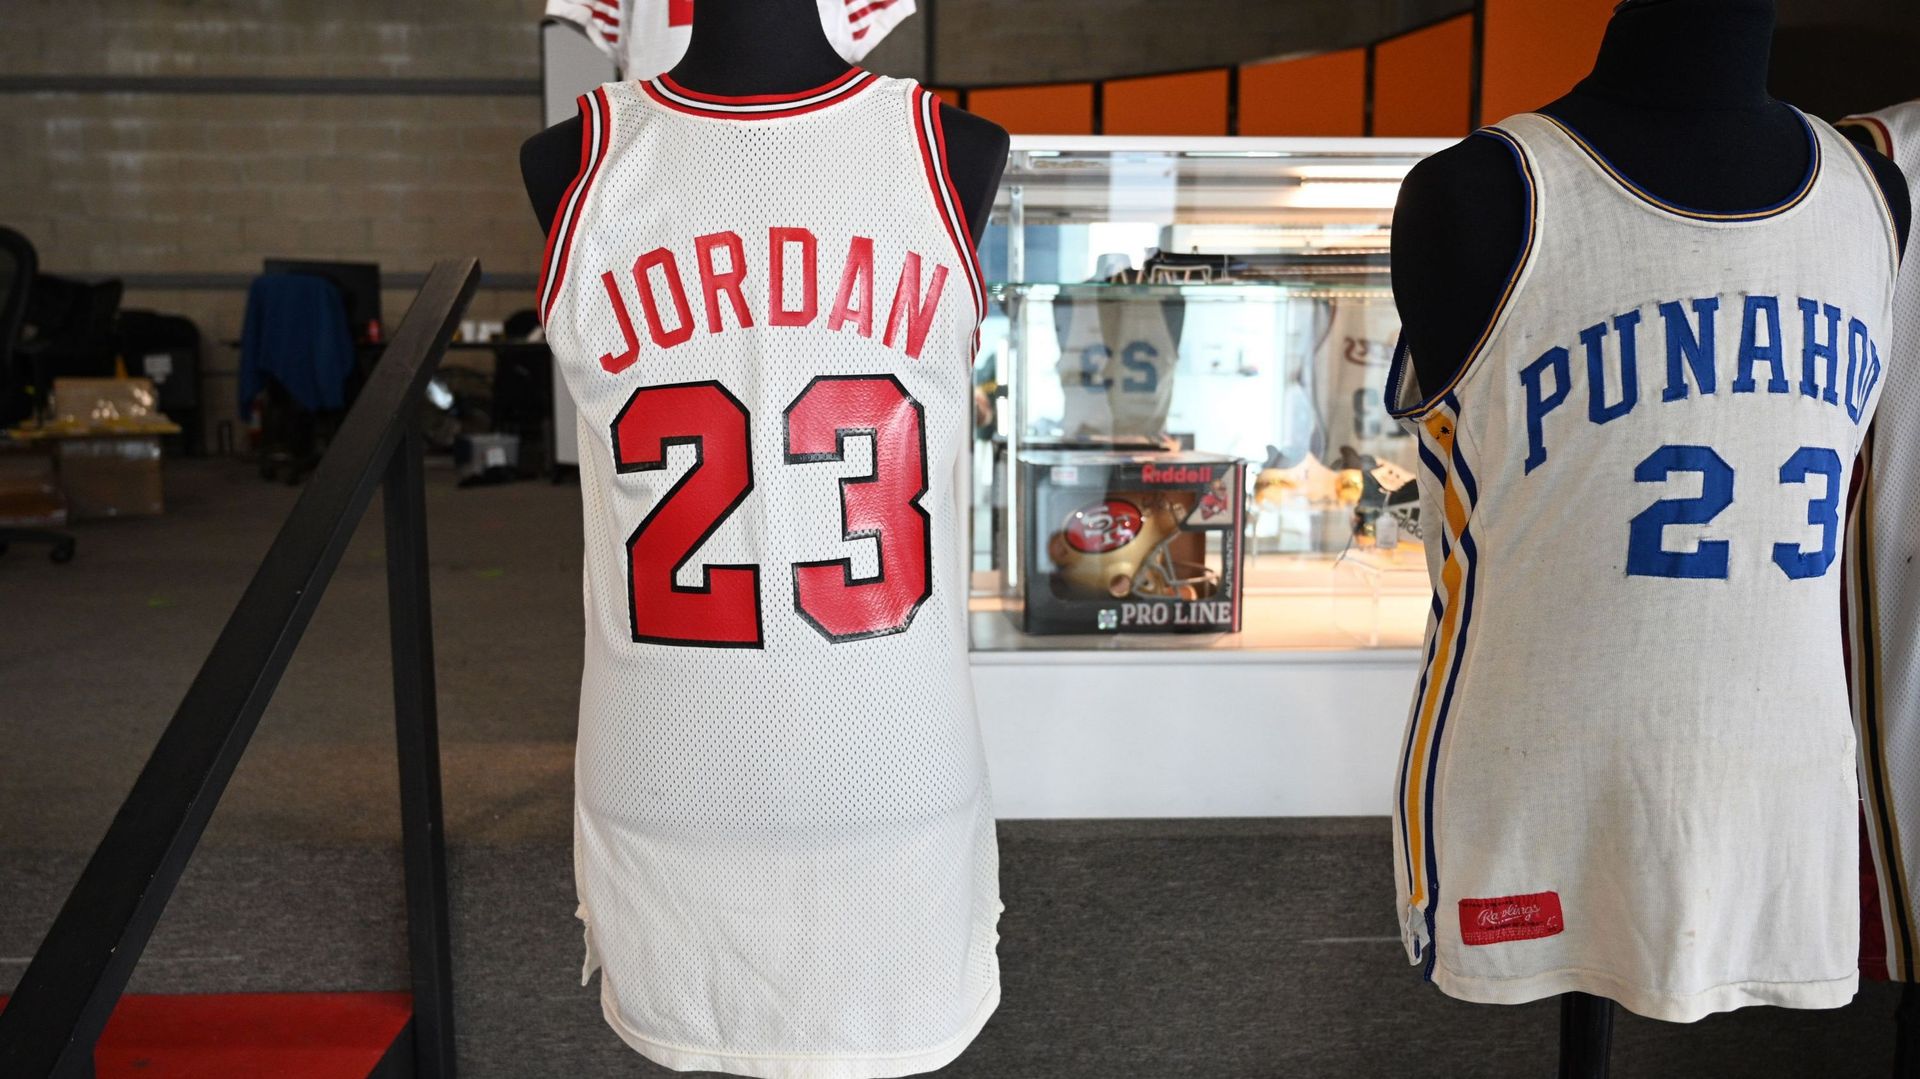 Le maillot que Jordan portait lors de la conférence de presse annonçant sa signature au Chicago Bulls en 1984